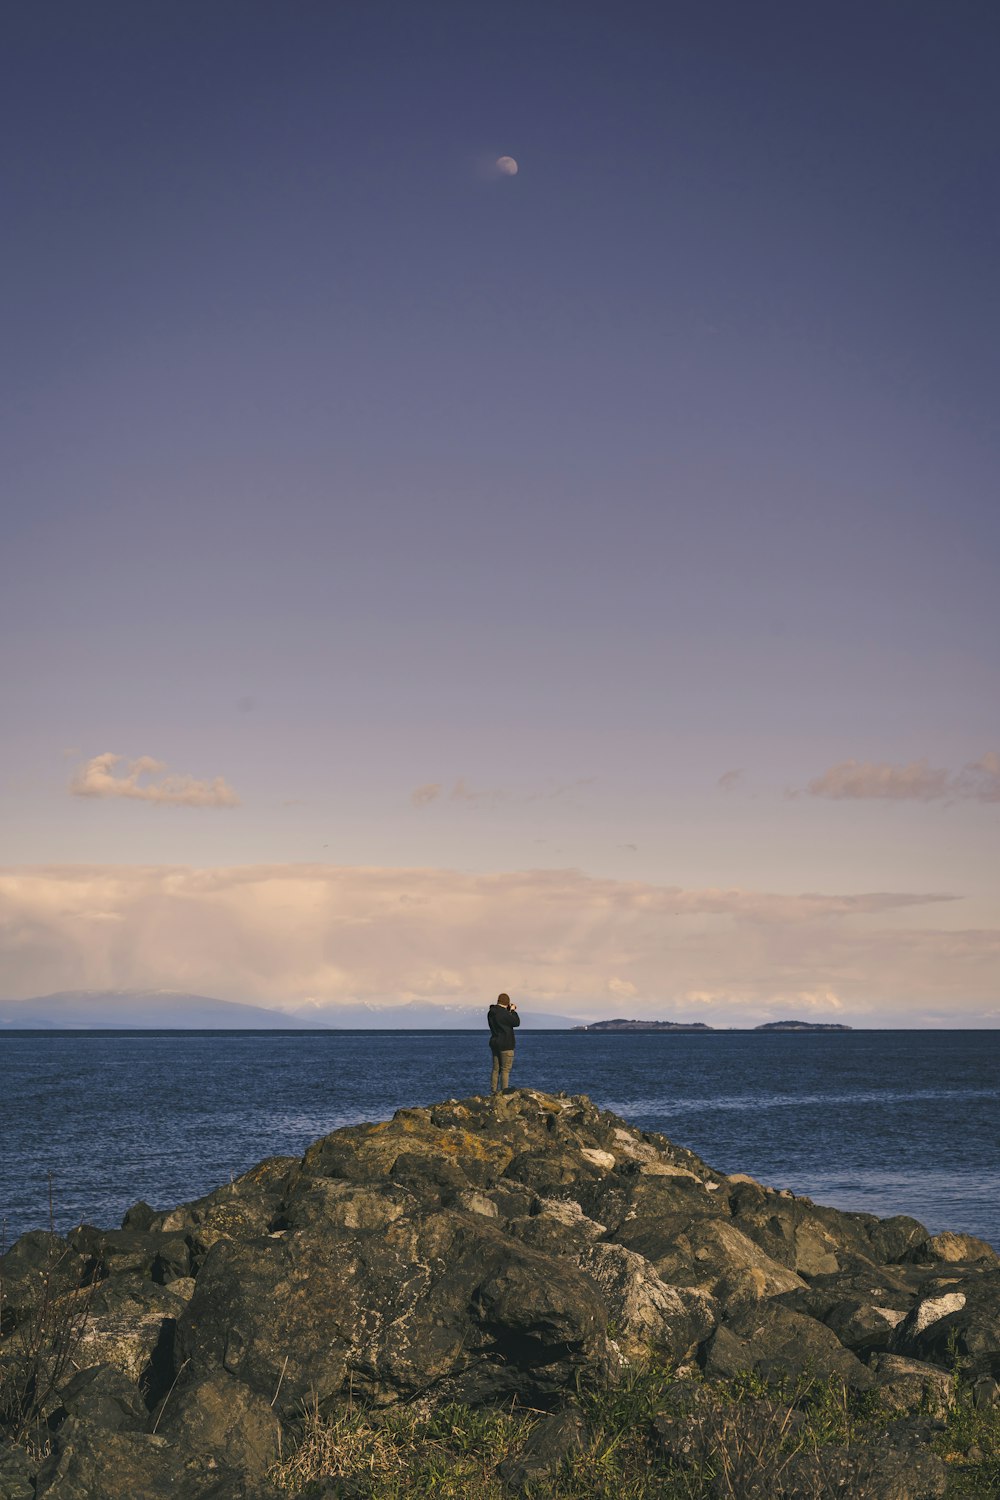 Person, die tagsüber auf einer Felsformation in der Nähe des Meeres unter blauem Himmel steht